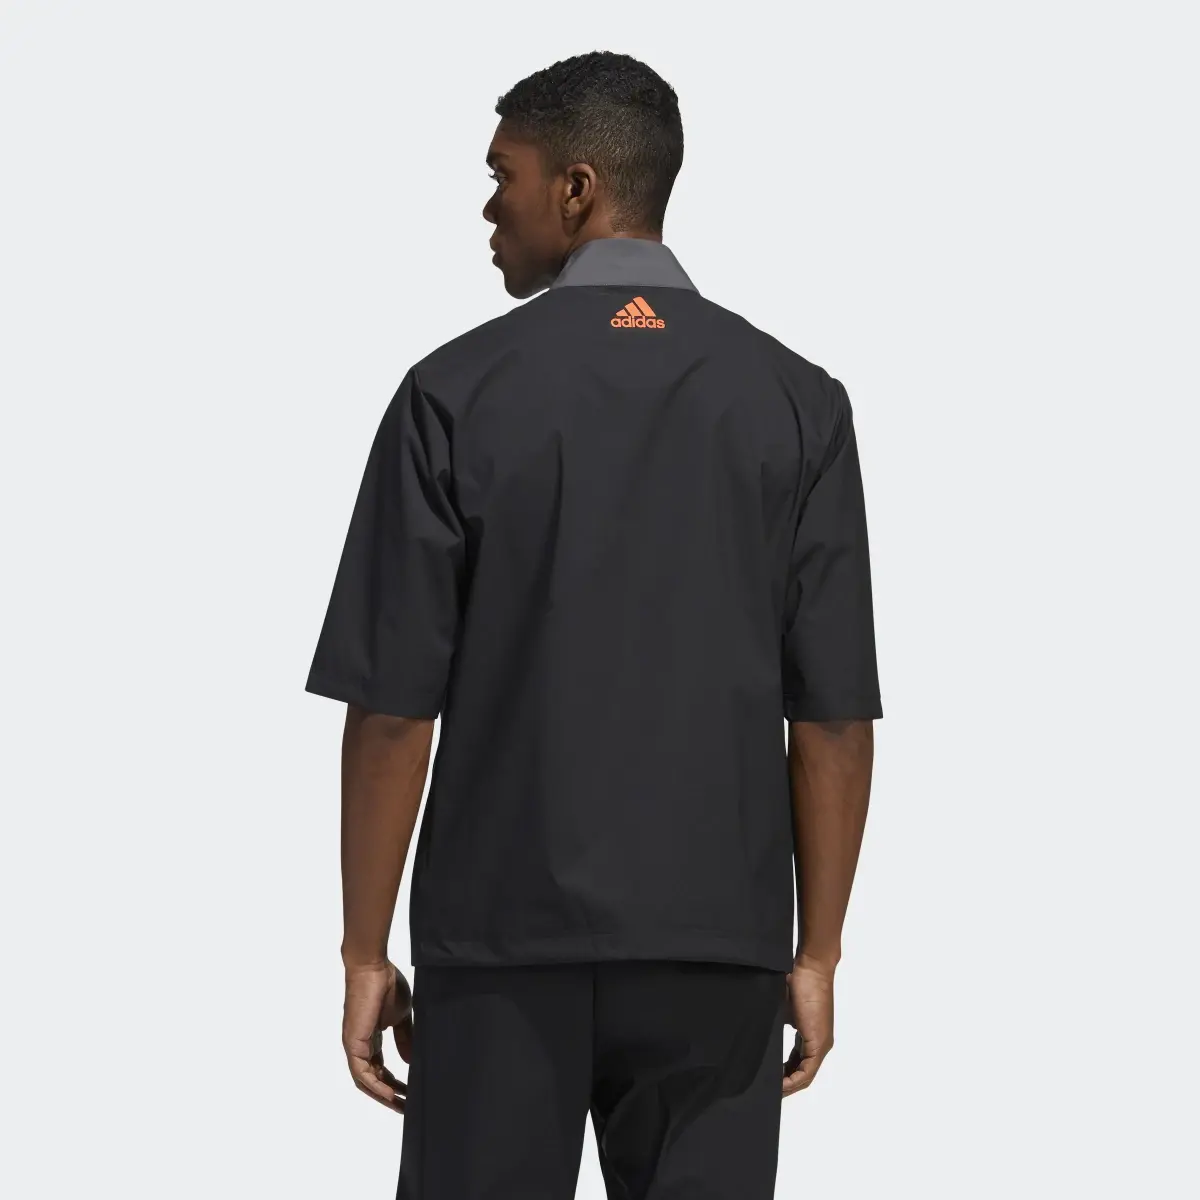 Adidas Provisional Short Sleeve Jacket. 3